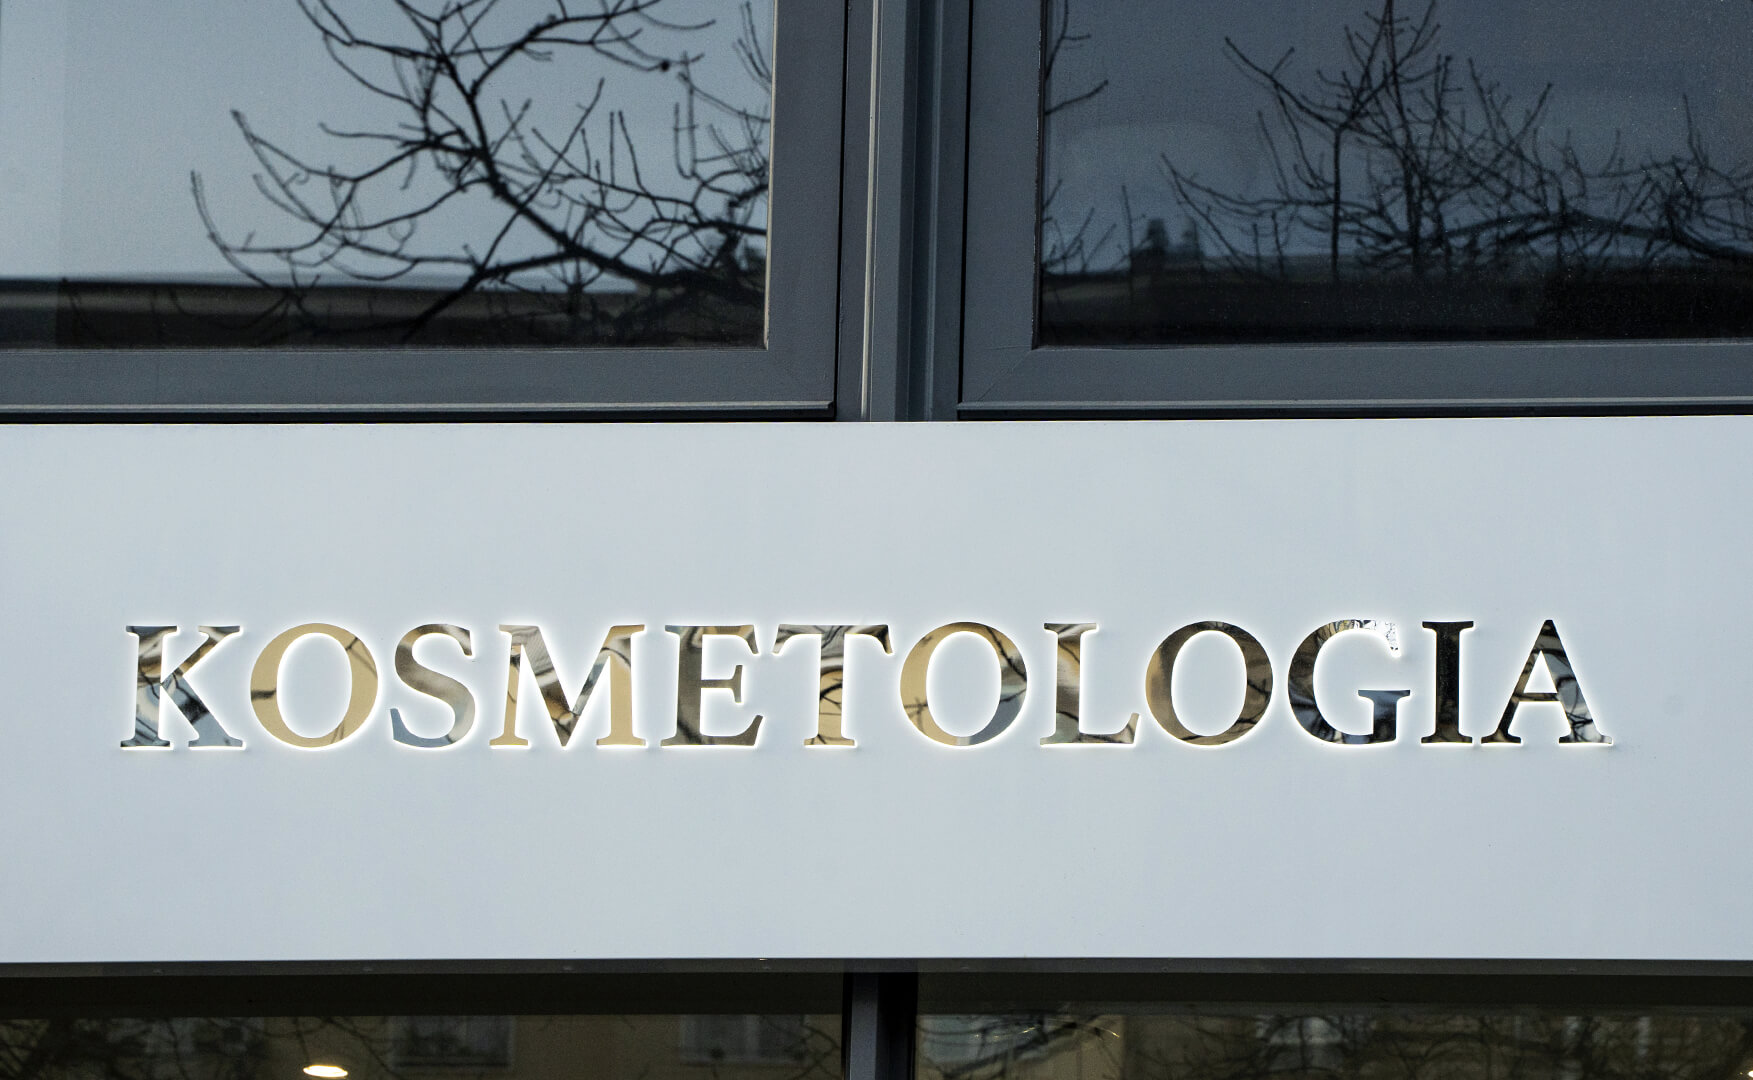 Cosmetologia - pannello in dibond, illuminato, lettere illuminate lateralmente